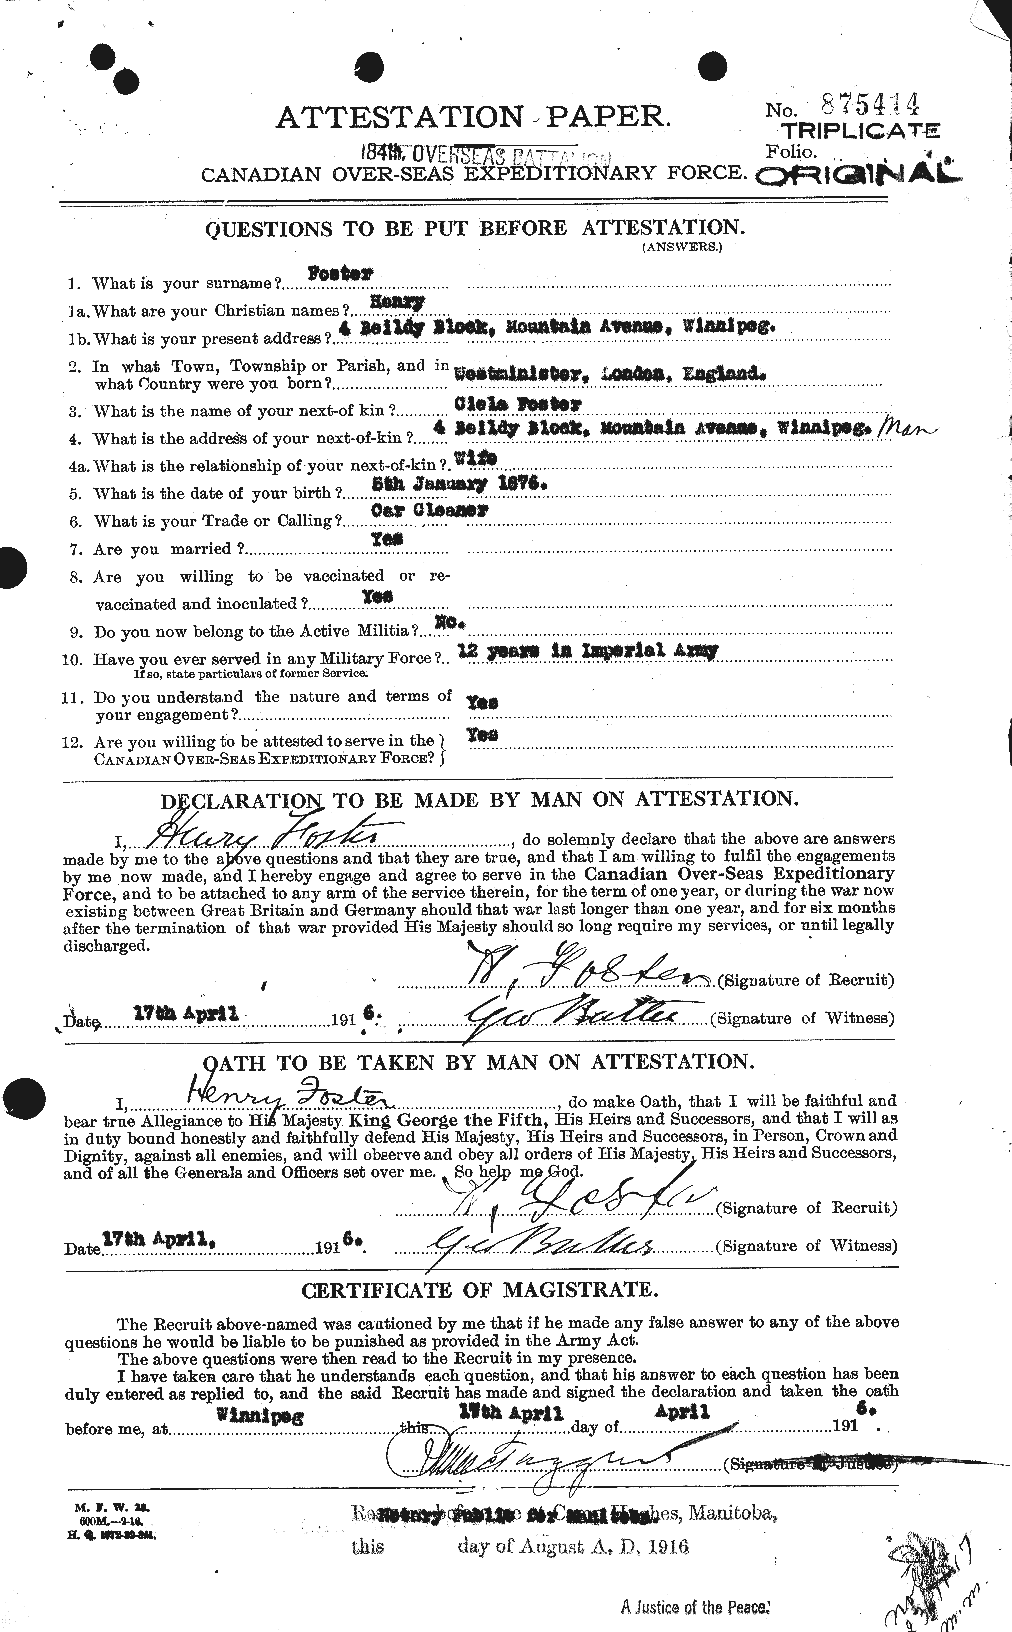 Dossiers du Personnel de la Première Guerre mondiale - CEC 333237a